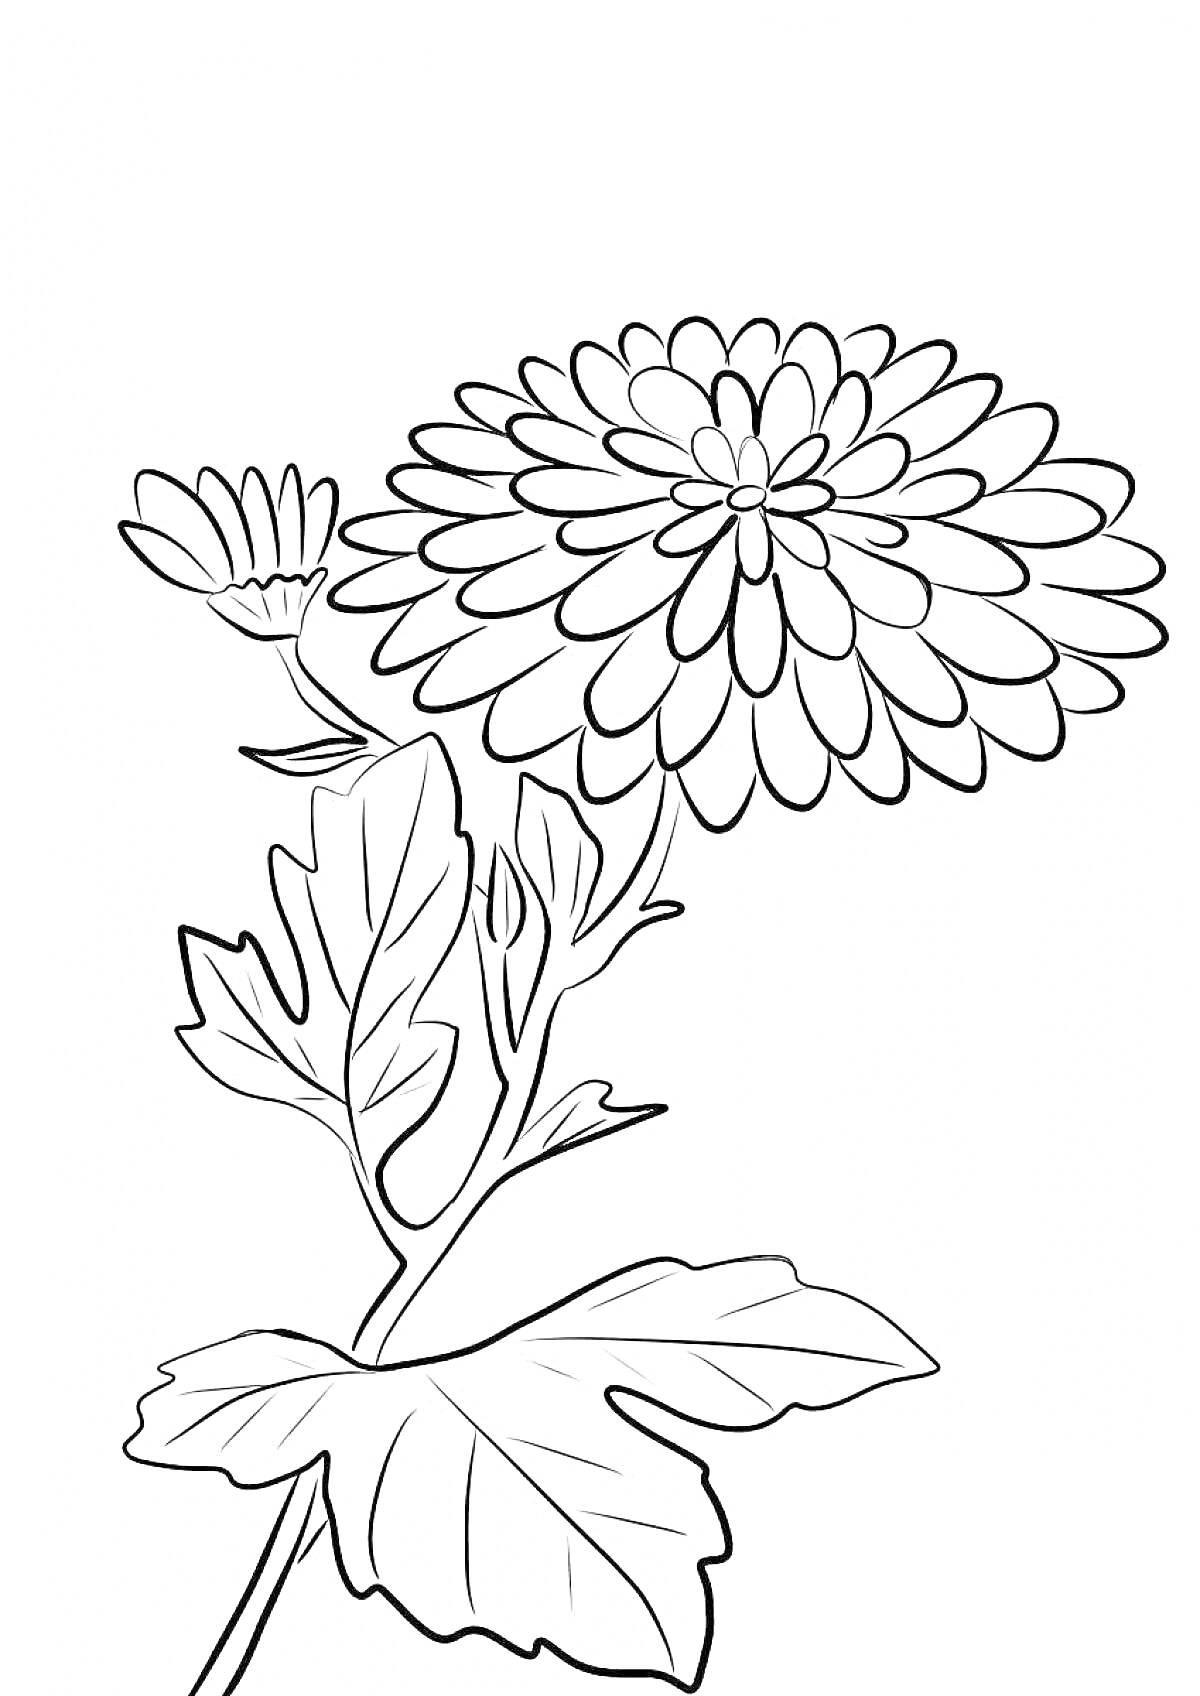 Раскраска Раскраска хризантема с цветком, бутоном и листьями